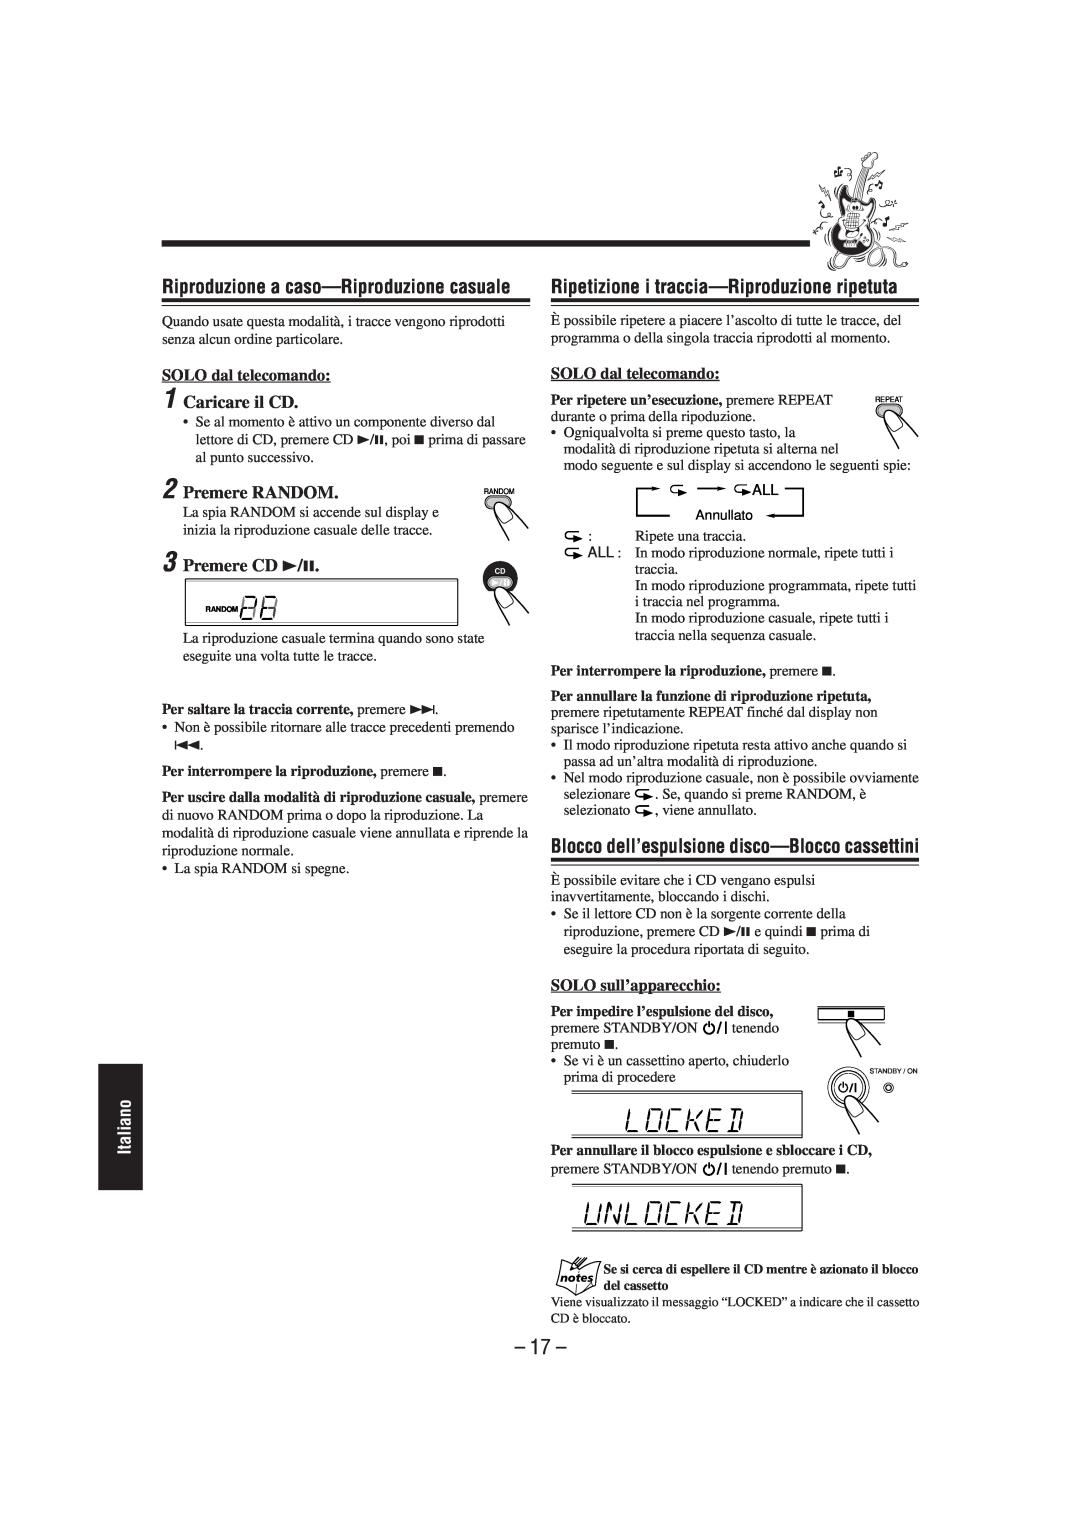 JVC CA-UXL40R manual Riproduzione a caso—Riproduzionecasuale, Blocco dell’espulsione disco—Bloccocassettini, Premere RANDOM 